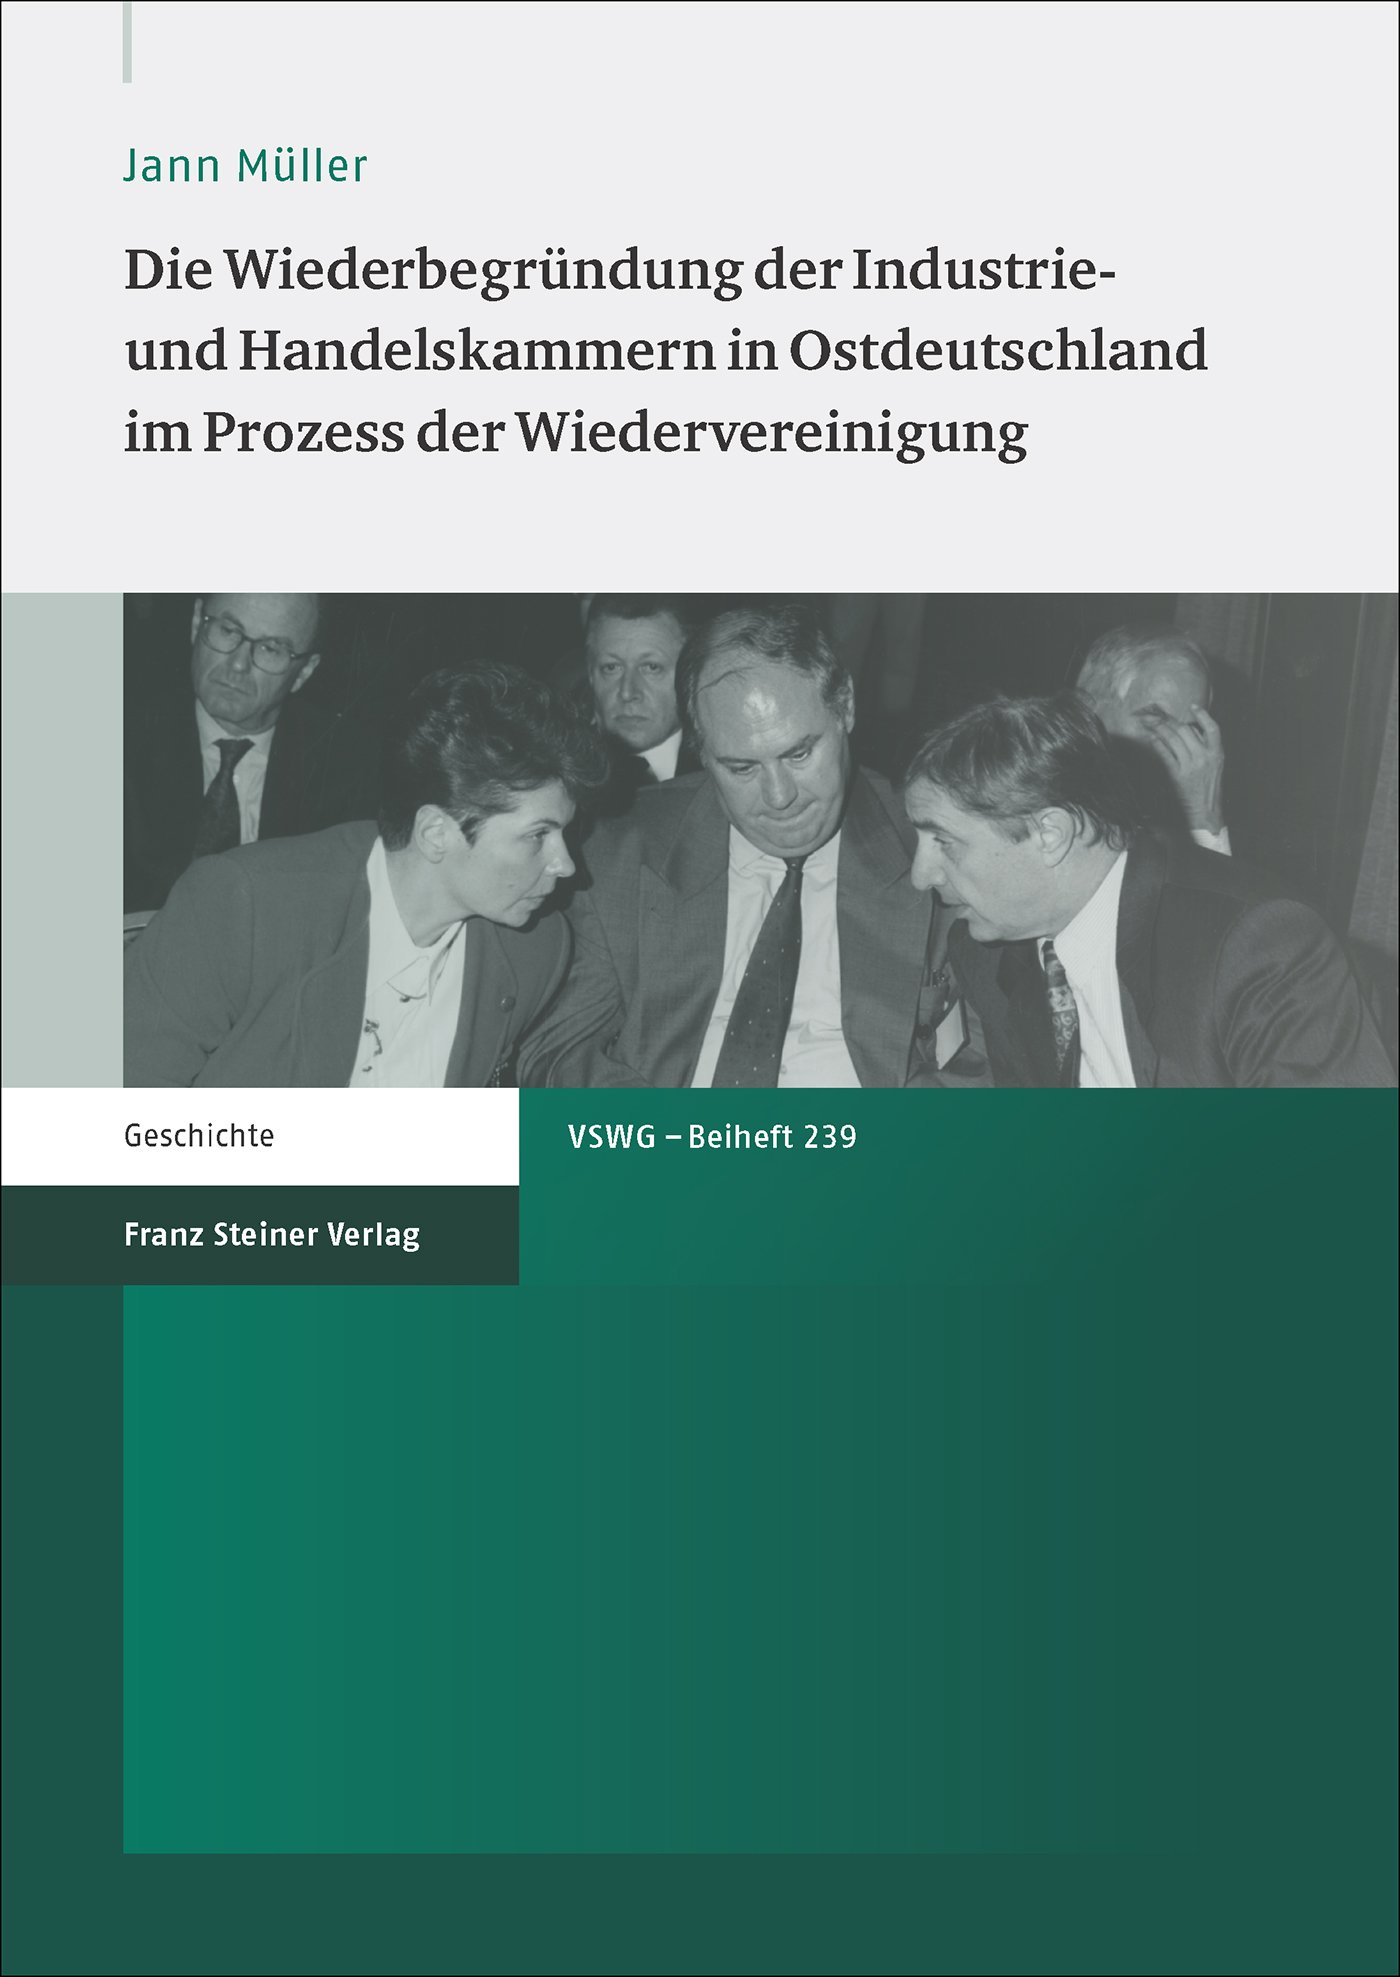 Die Wiederbegründung der Industrie- und Handelskammern in Ostdeutschland im Prozess der Wiedervereinigung